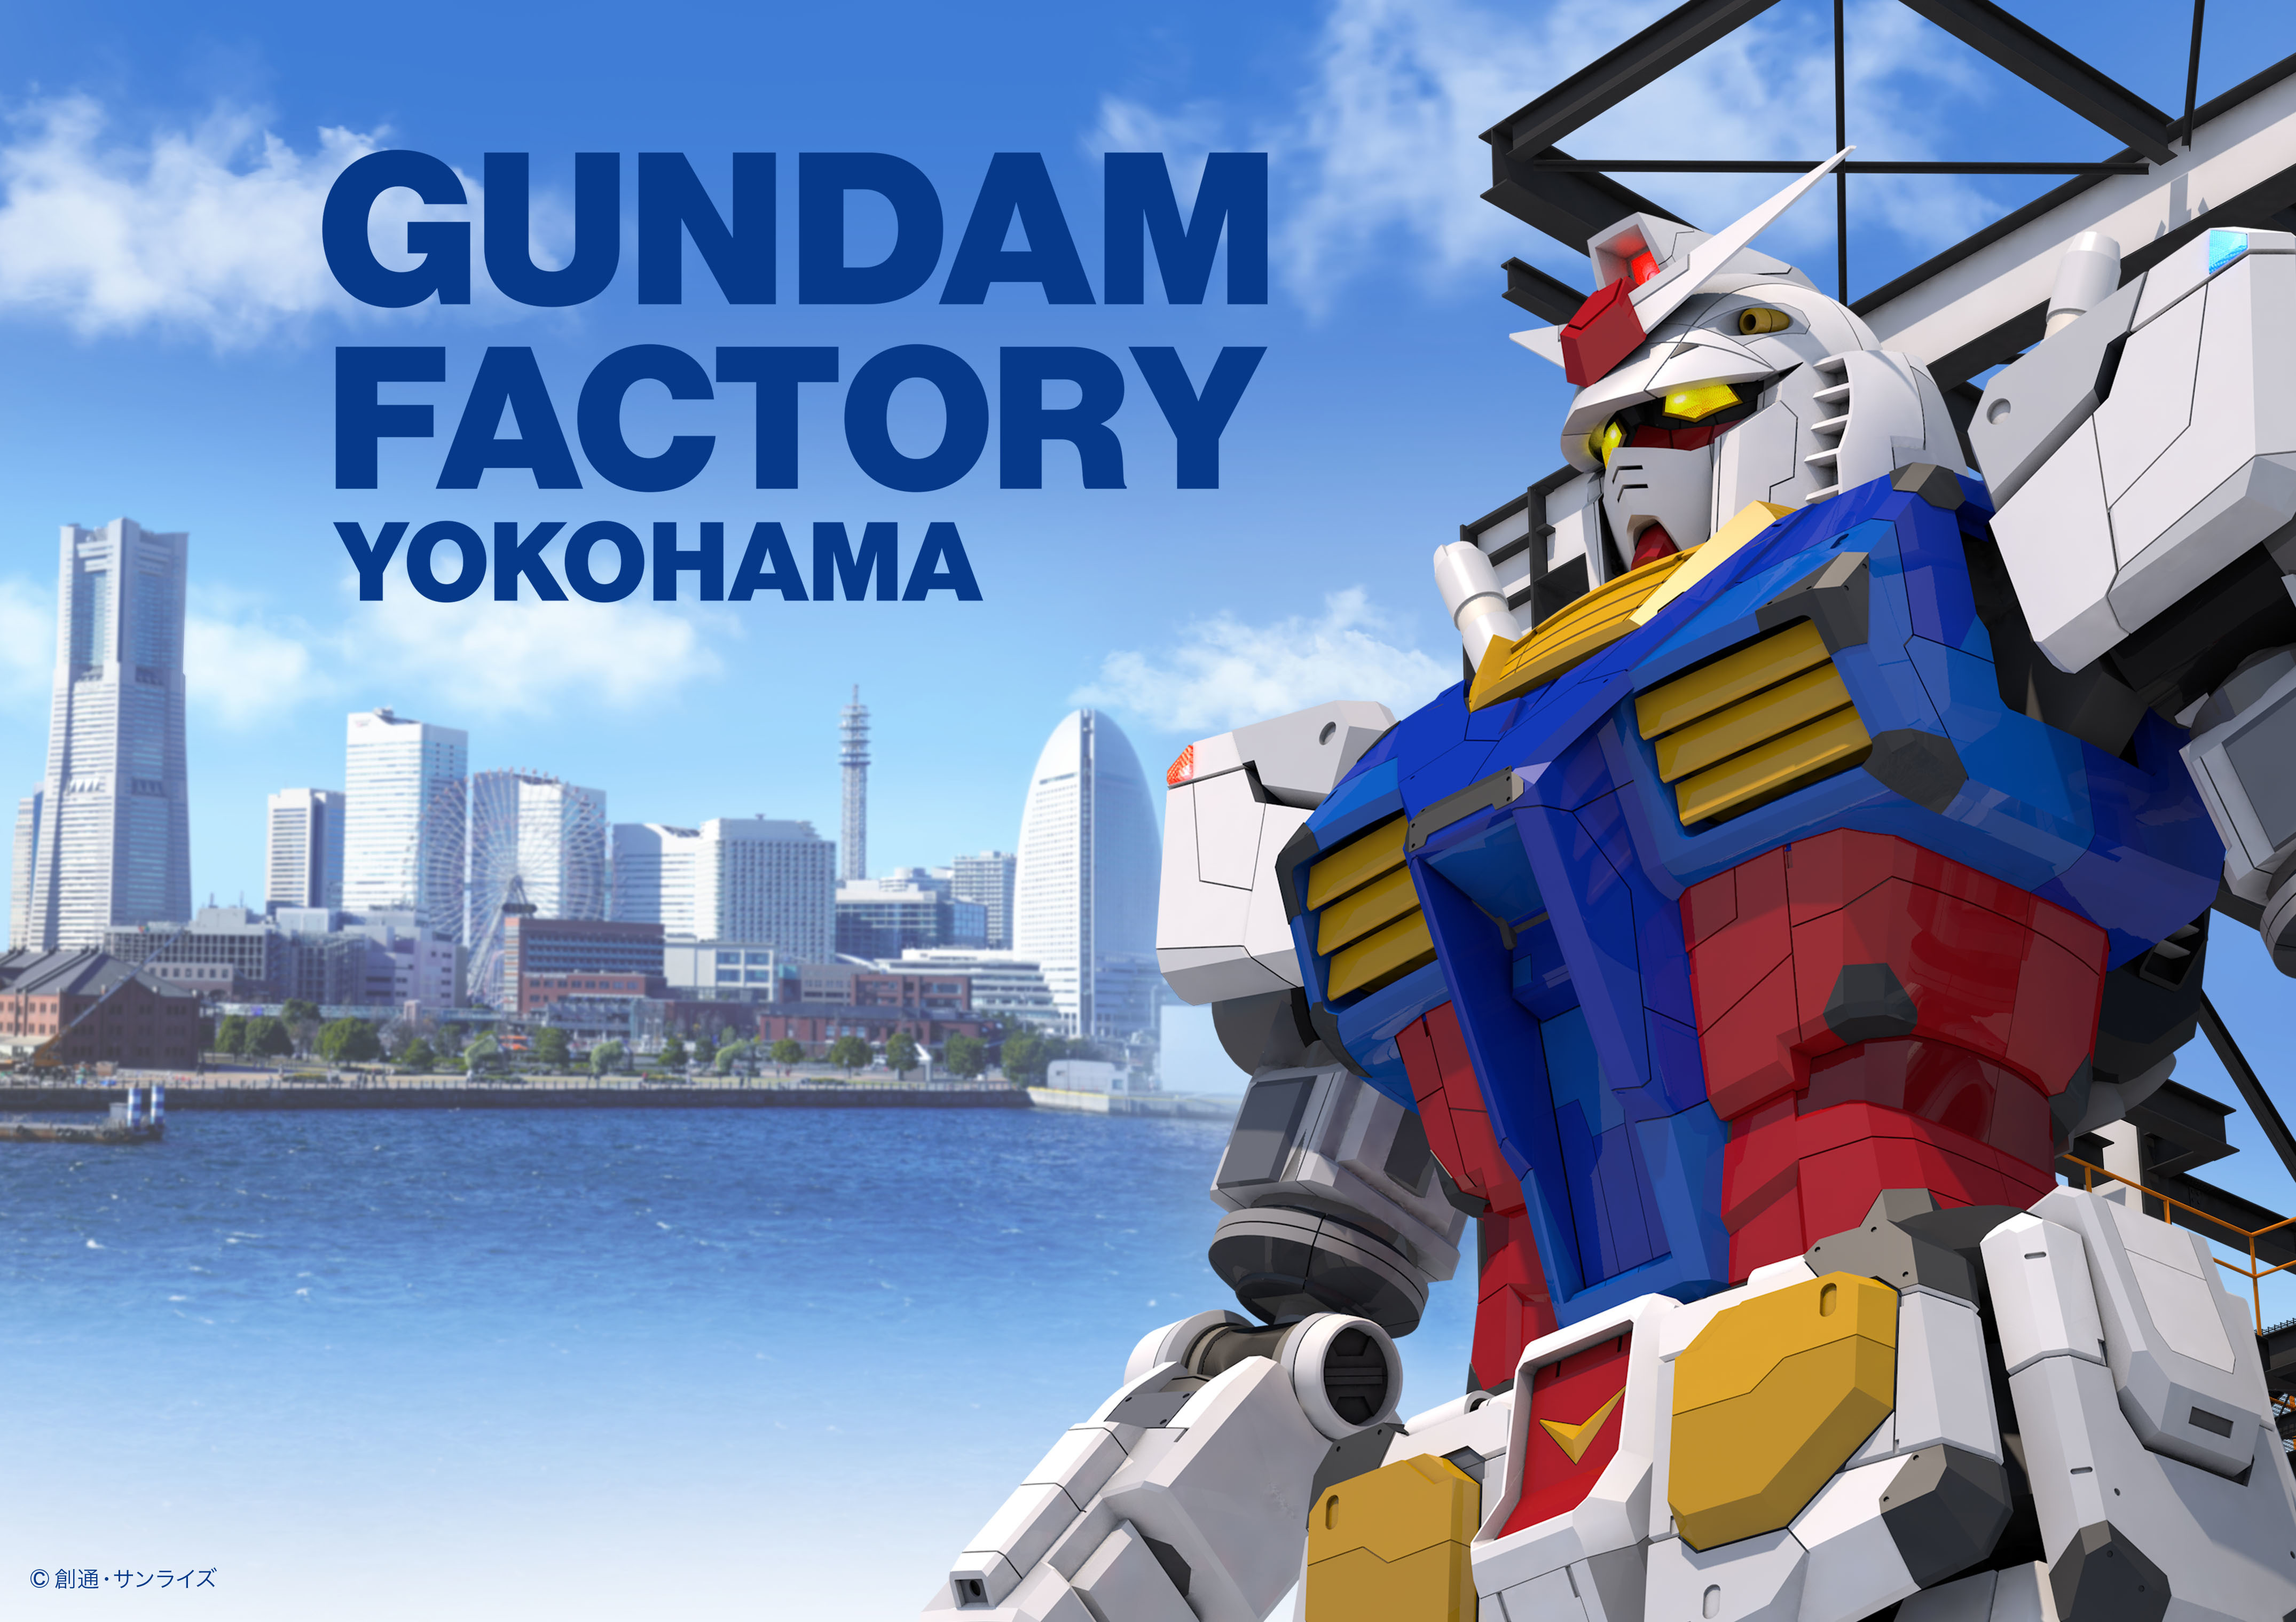 『GUNDAM FACTORY YOKOHAMA』ビジュアル (C)創通・サンライズ